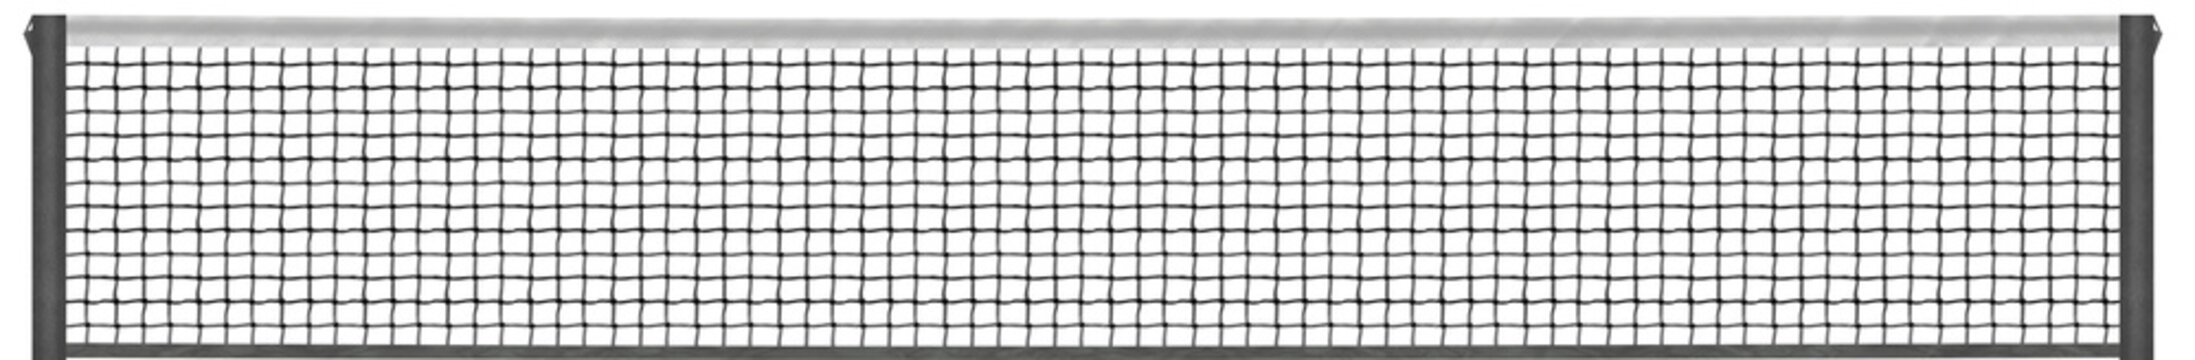 Digital png illustration of tennis net on transparent background